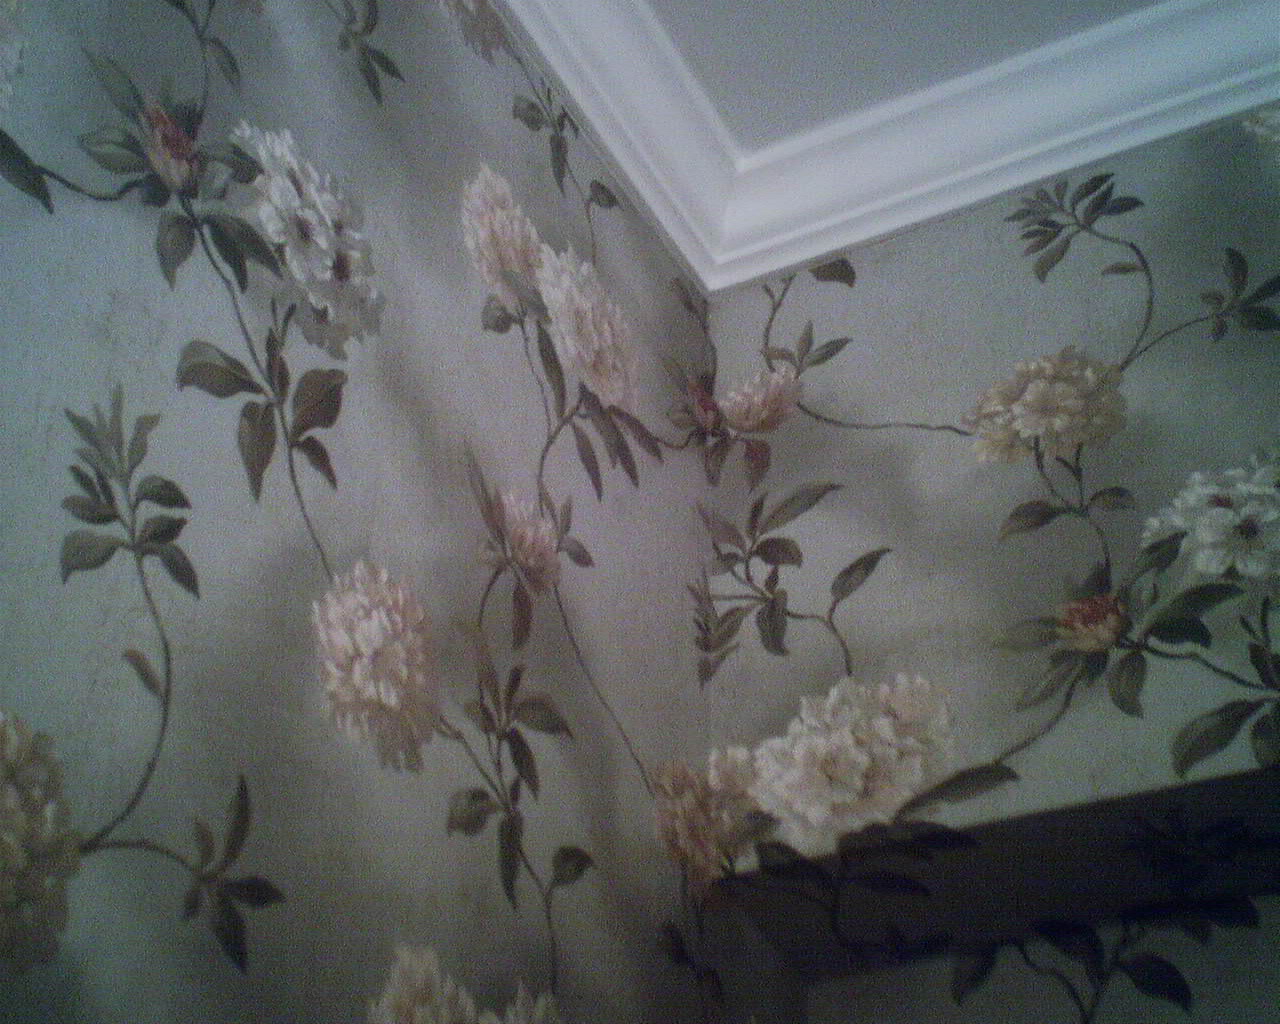 Viney Floral in a Master Bathroom Wallpaperladys Blog